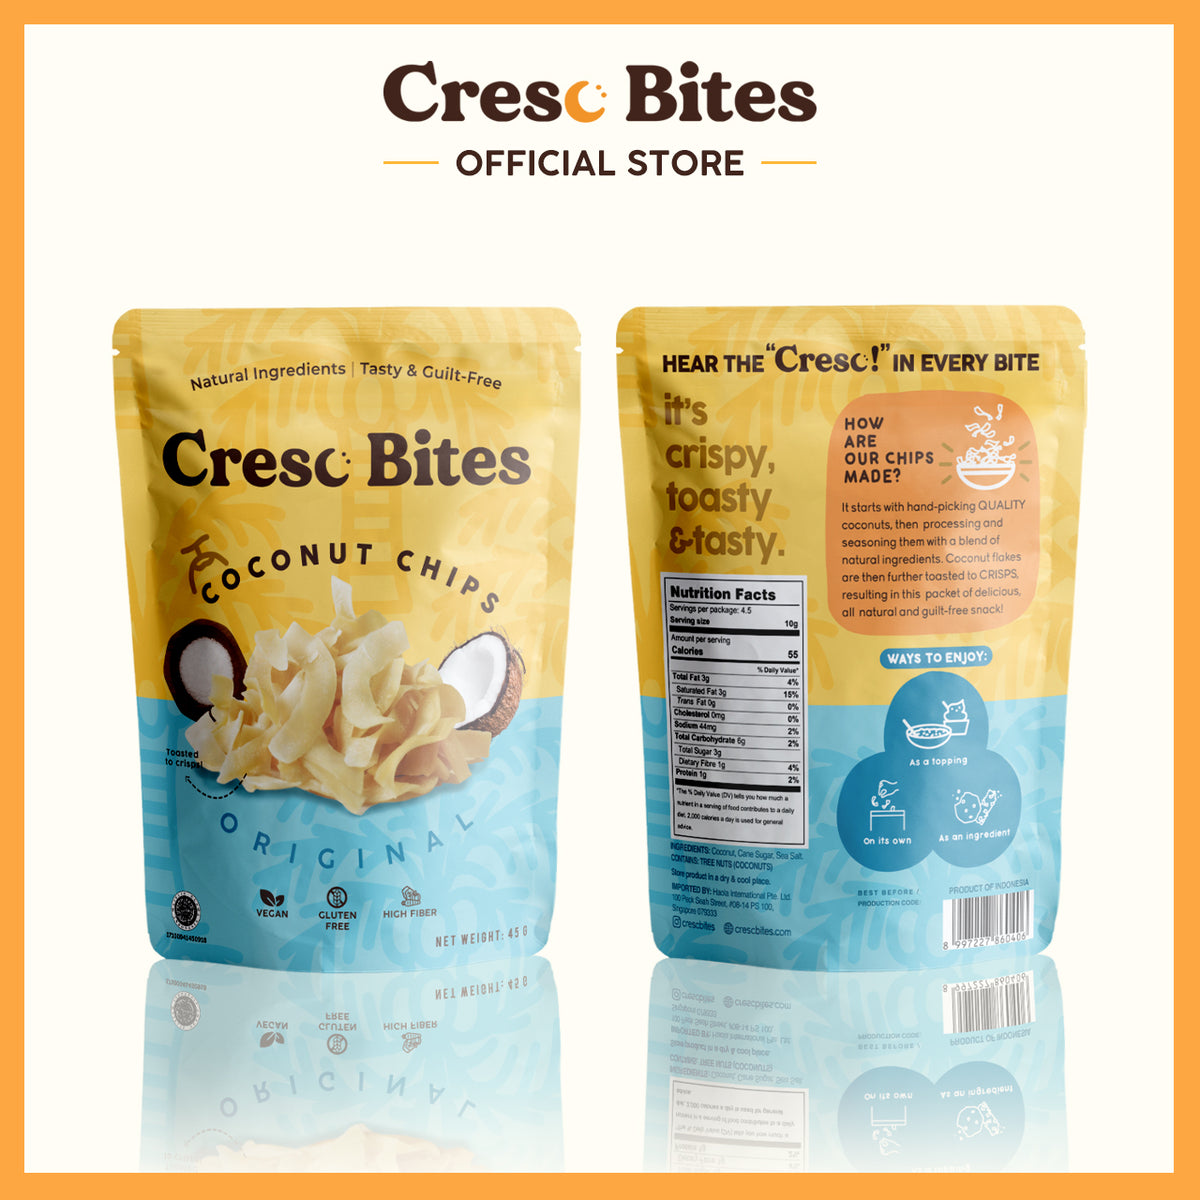 Cresc Bites - Coconut Chips (Original)